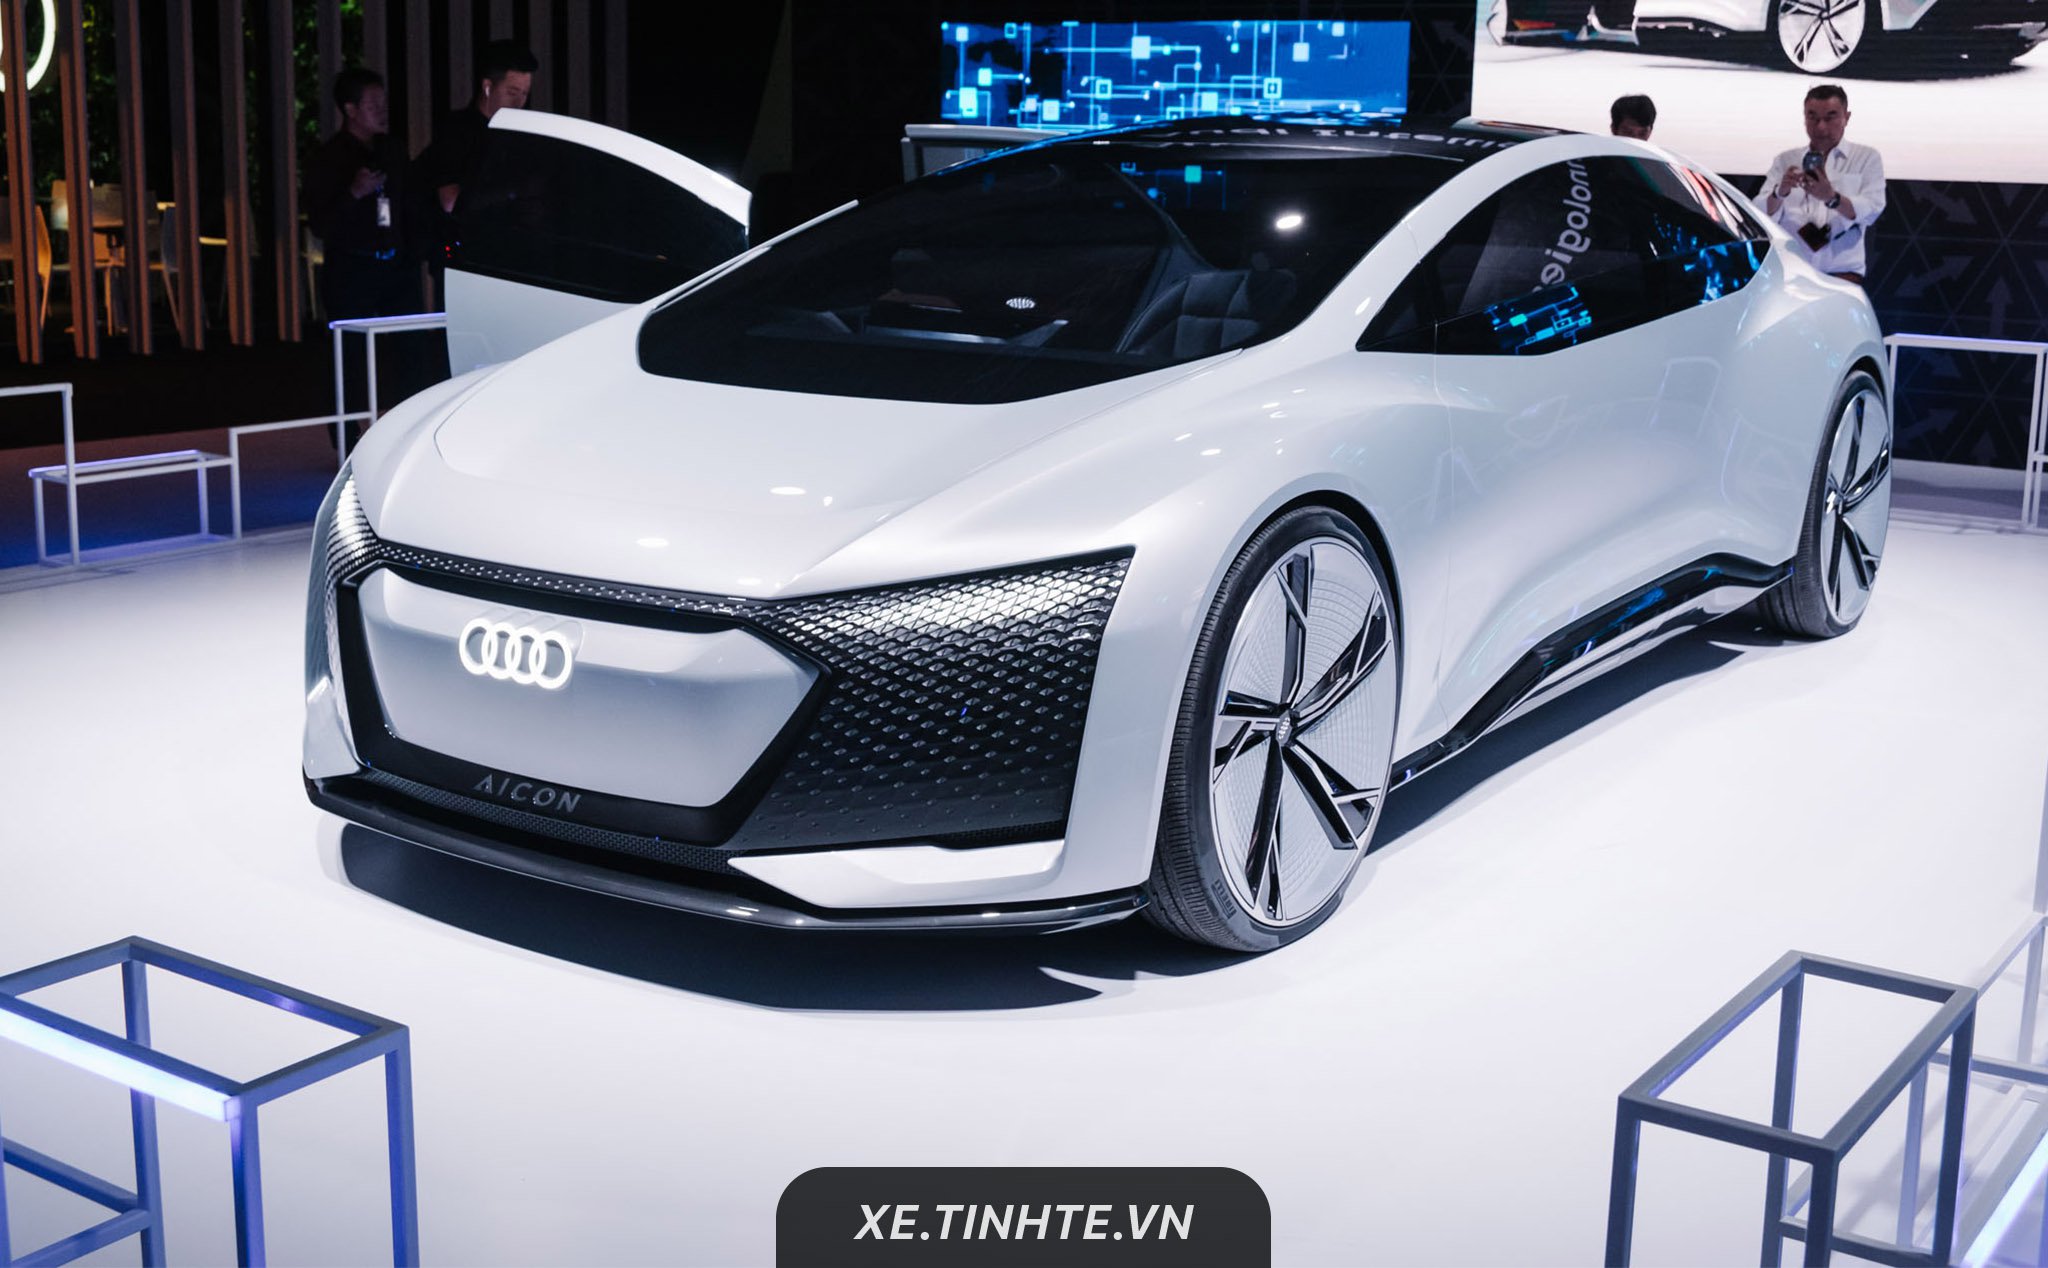 [Video] Xem chi tiết Concept Audi Aicon: tự hành hoàn toàn cấp độ 5, chạy được 800 km